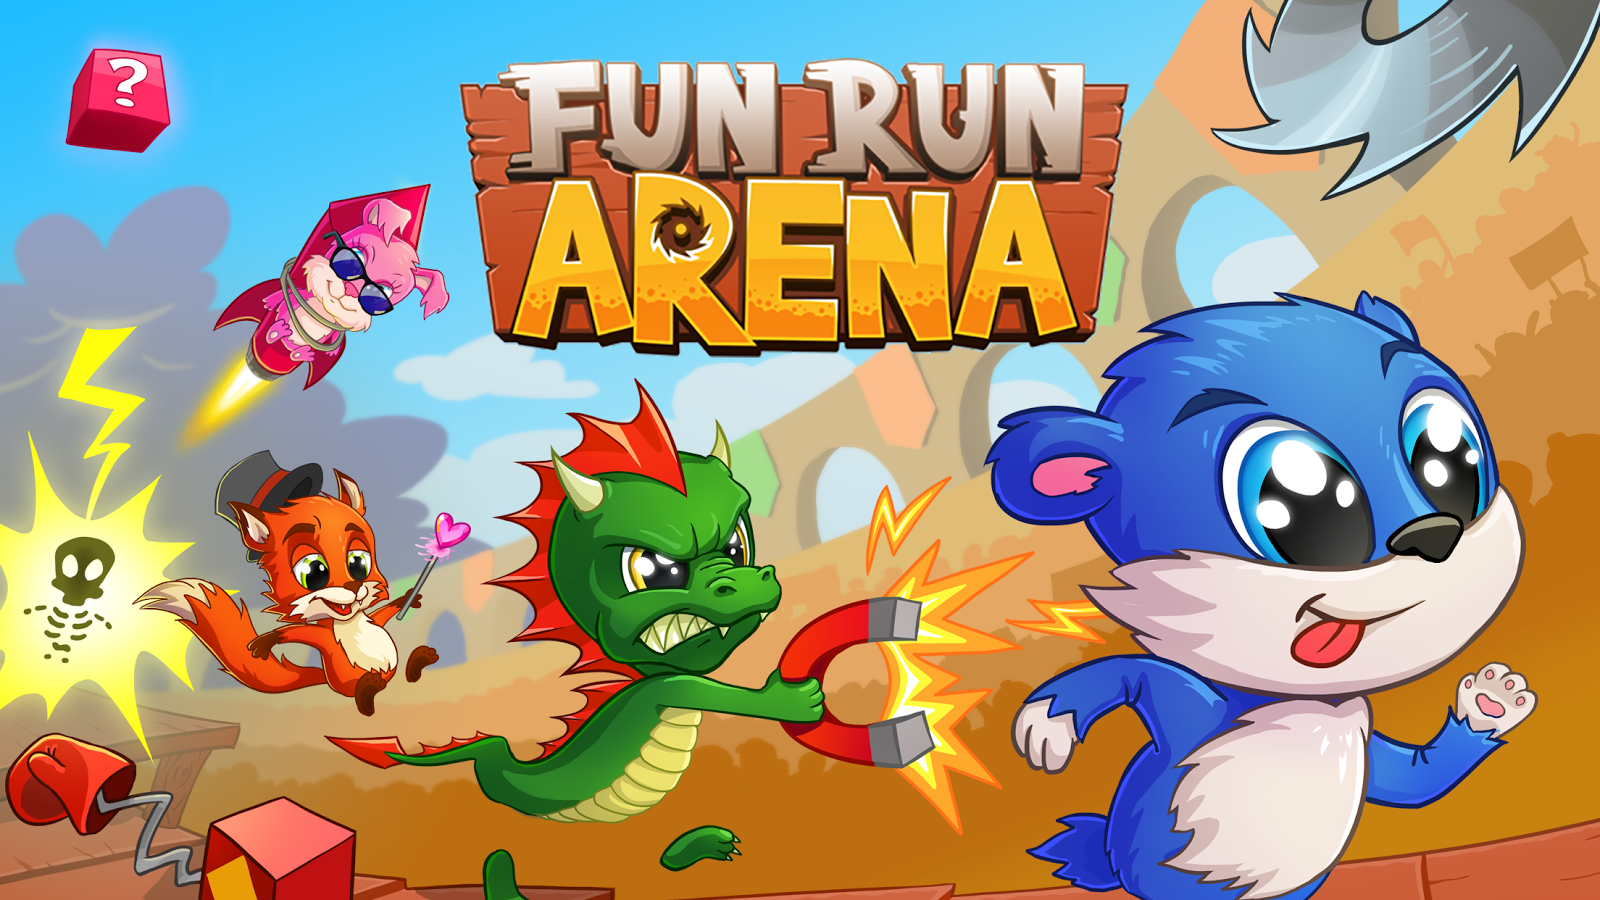 Fun Run Arena Ekran Görüntüleri   5 - Fun Run, Transparent background PNG HD thumbnail